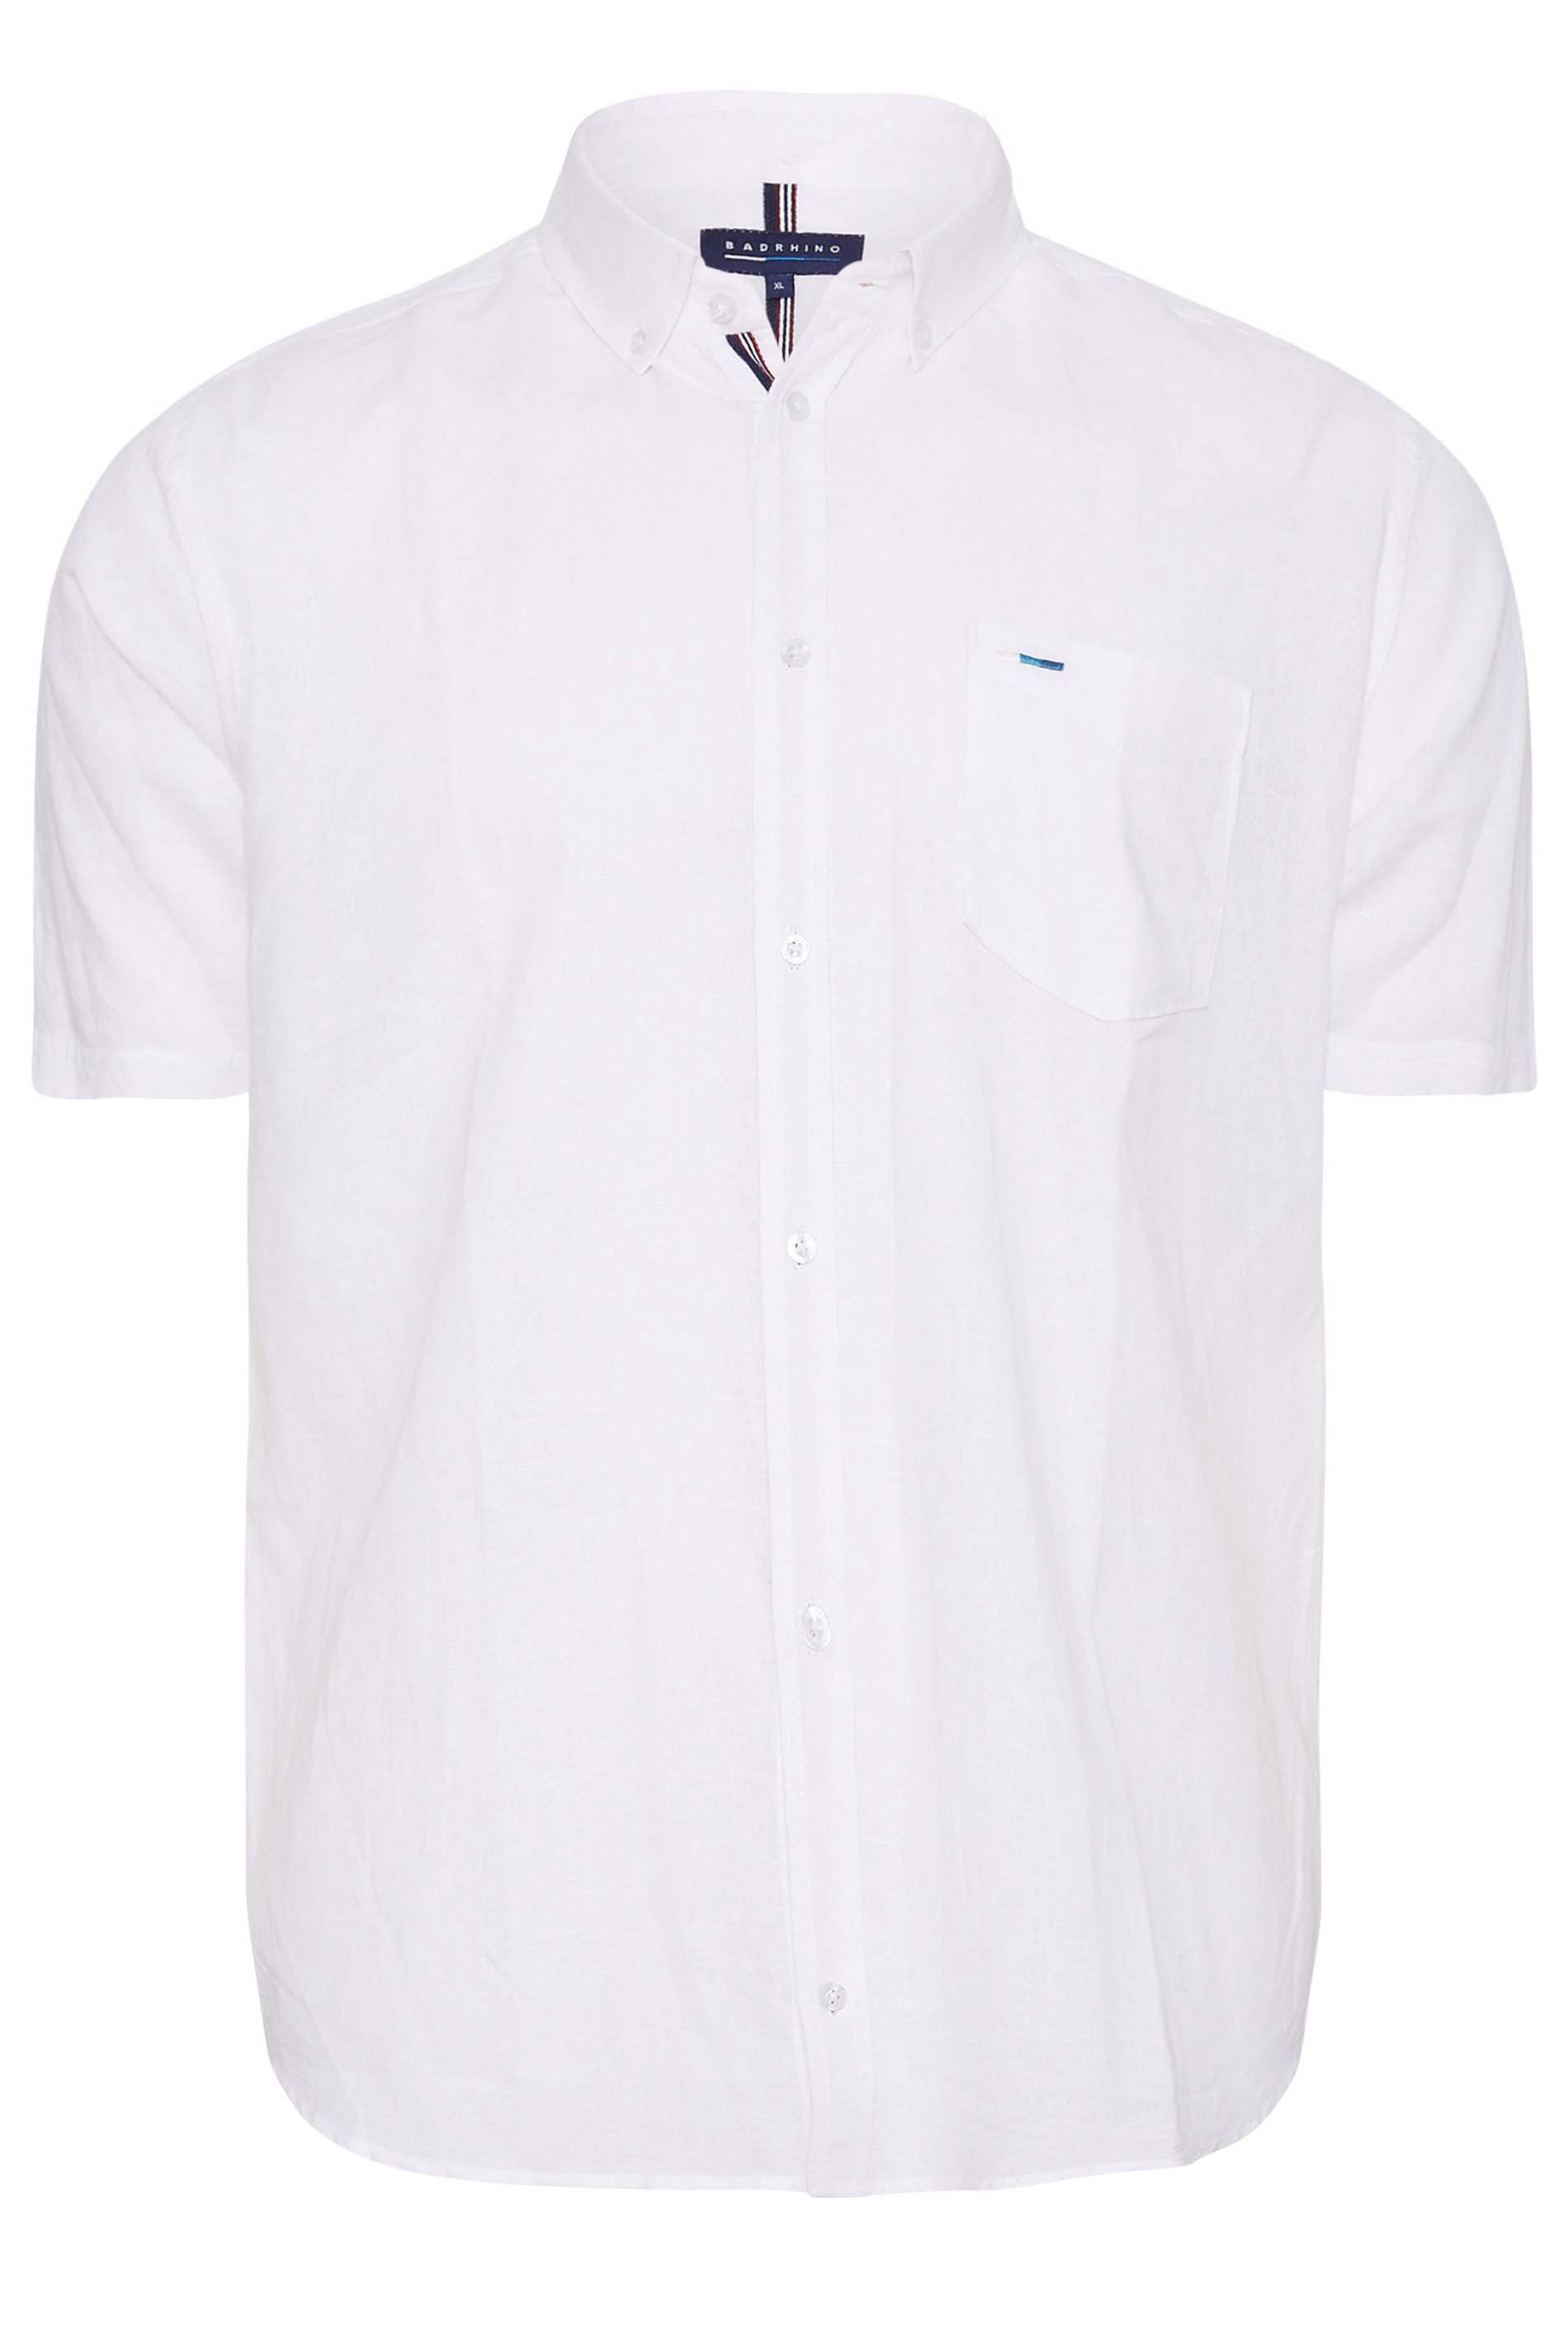 BadRhino Big & Tall White Linen Shirt | BadRhino